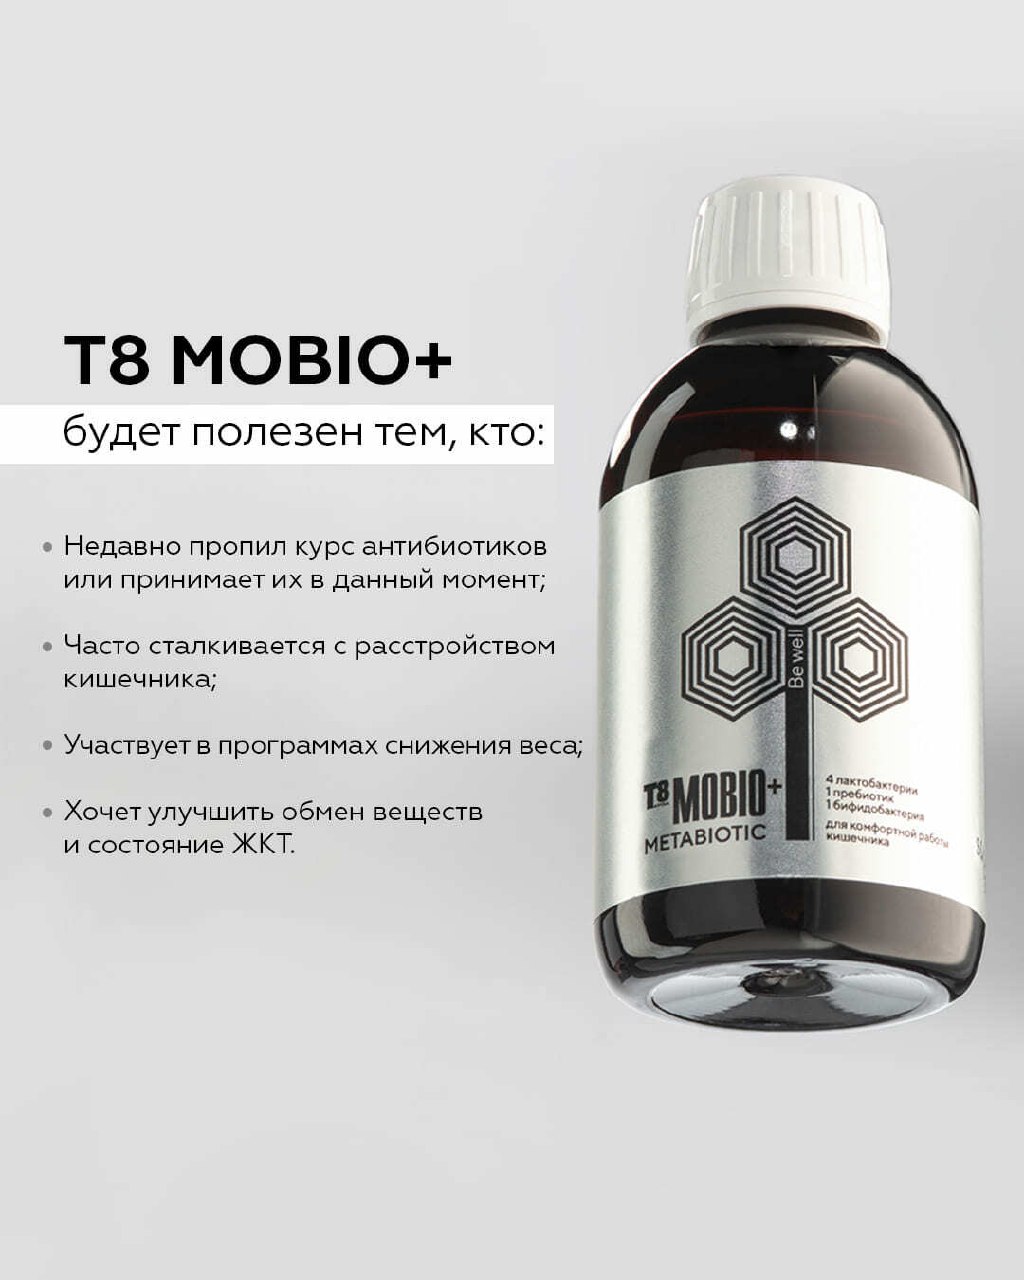 Комплексная пищевая добавка Tayga8 Т8 Mobio метабиотик для нормализации работы кишечника с высокой биодоступностью - фото 8